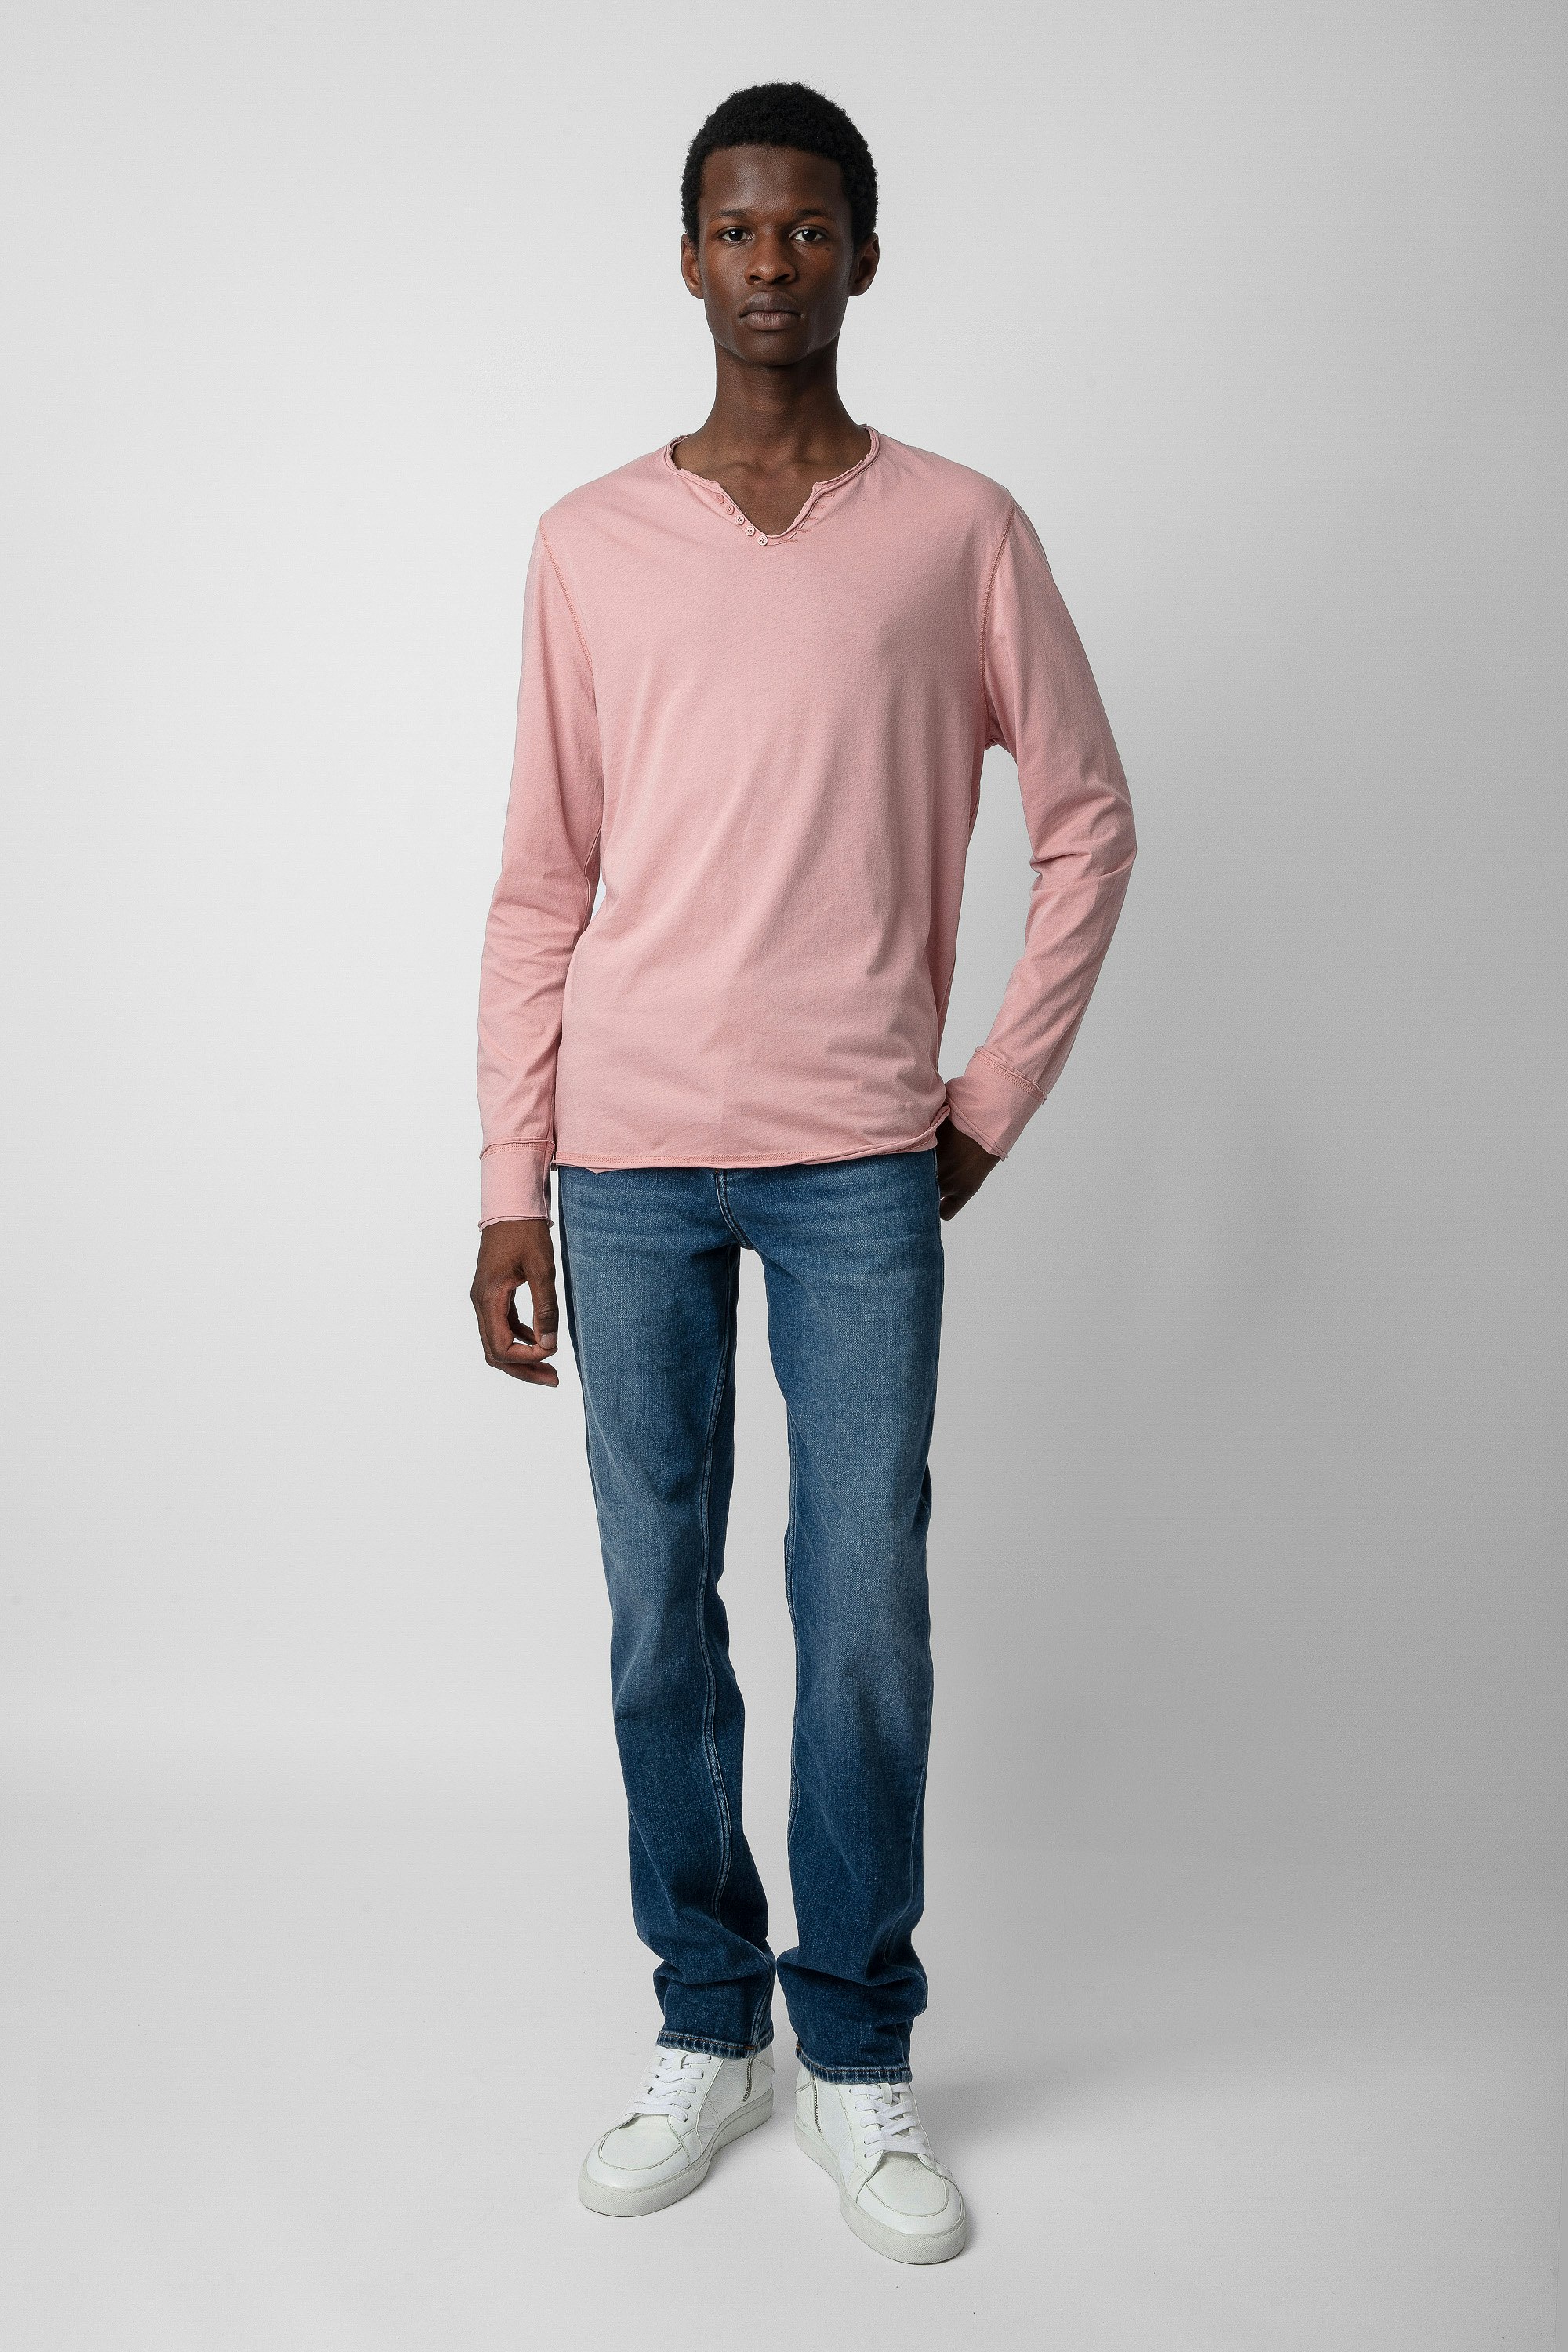 Monastir T-shirt - Men’s pink cotton long-sleeved Henley T-shirt.